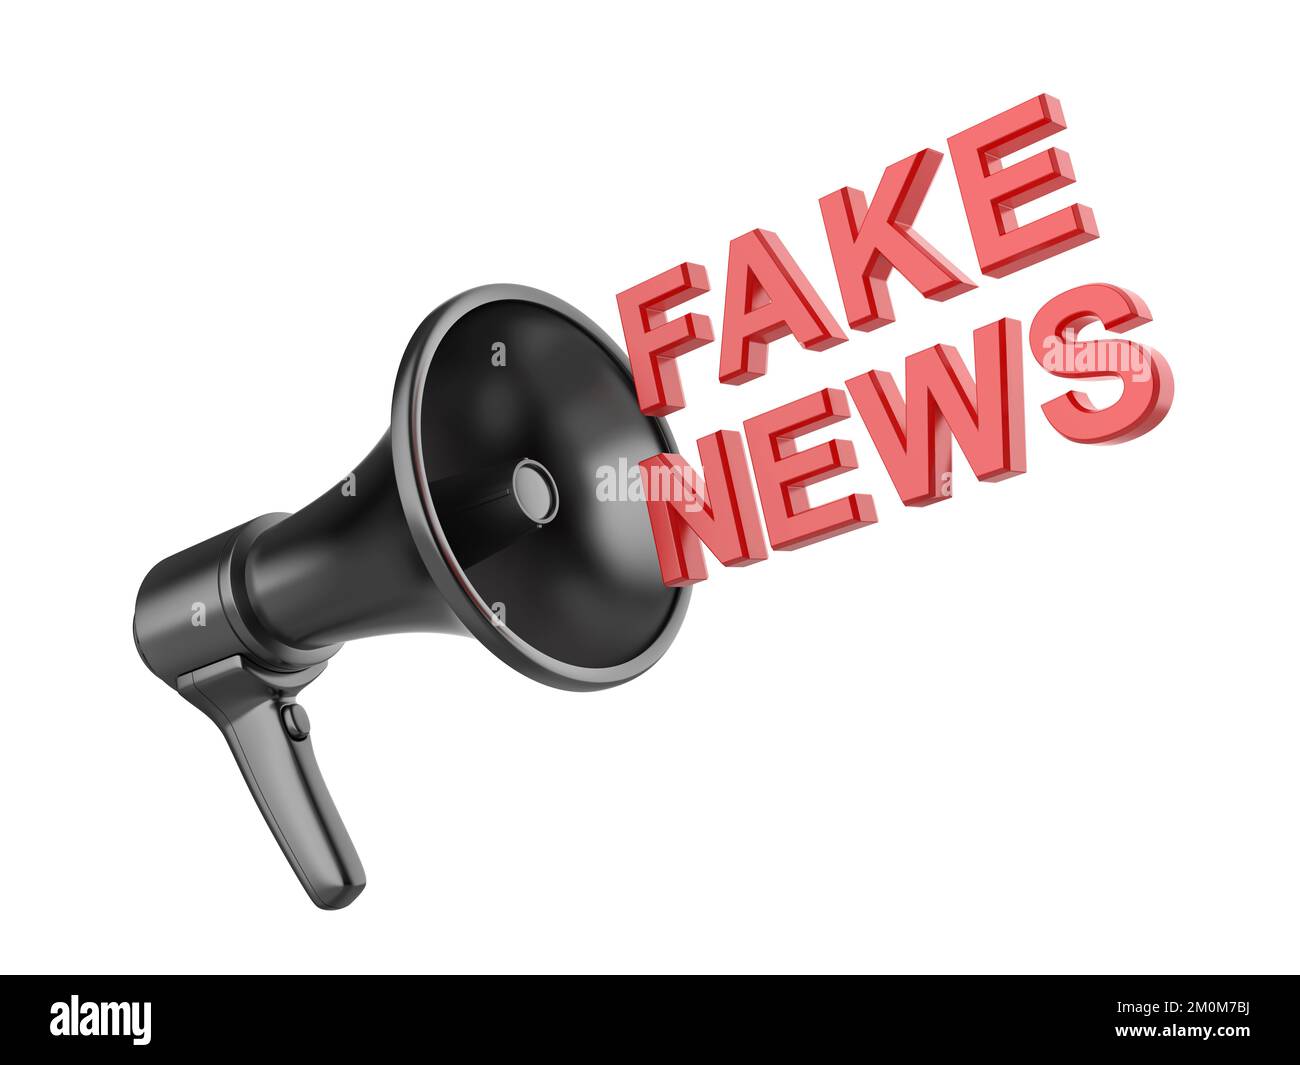 Promouvoir les fake news avec le mégaphone électrique Banque D'Images